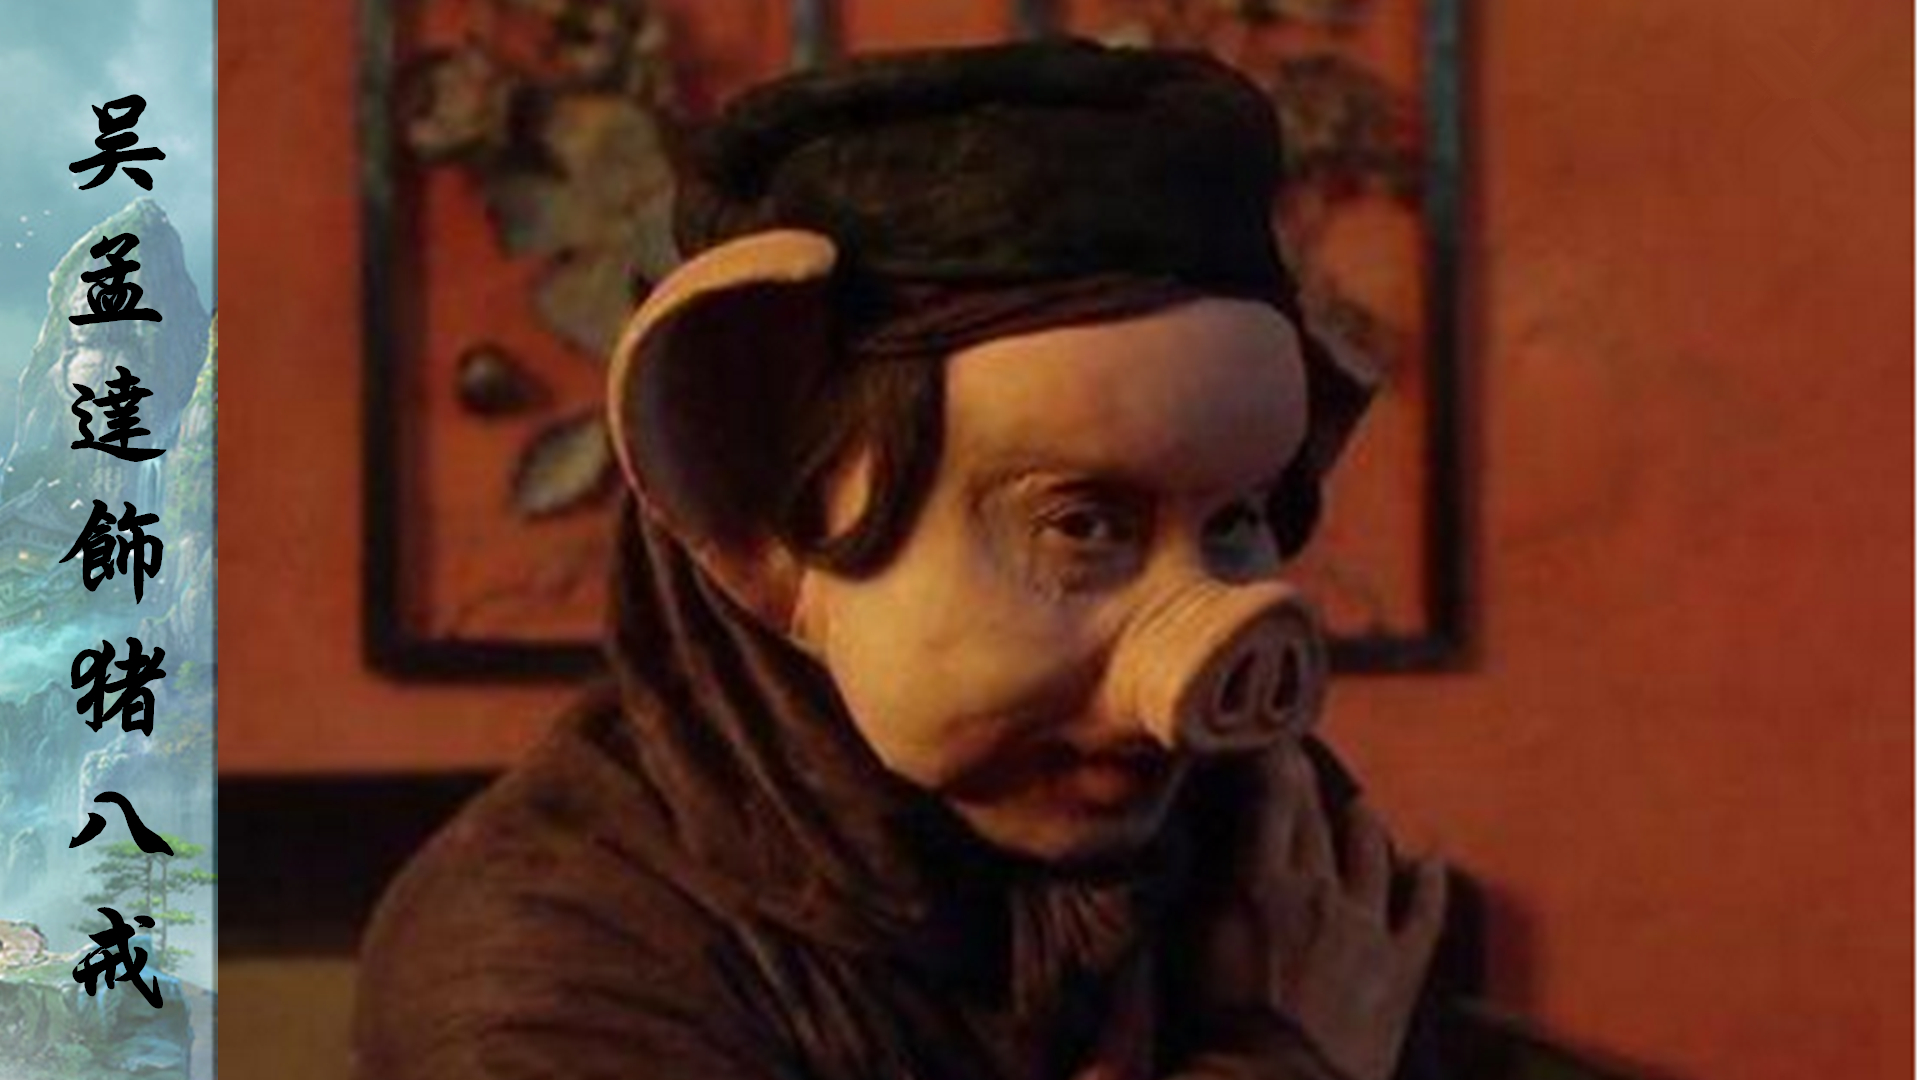 1995版《大话西游之月光宝盒》吴孟达饰猪八戒,上集是胡子拉碴的强盗